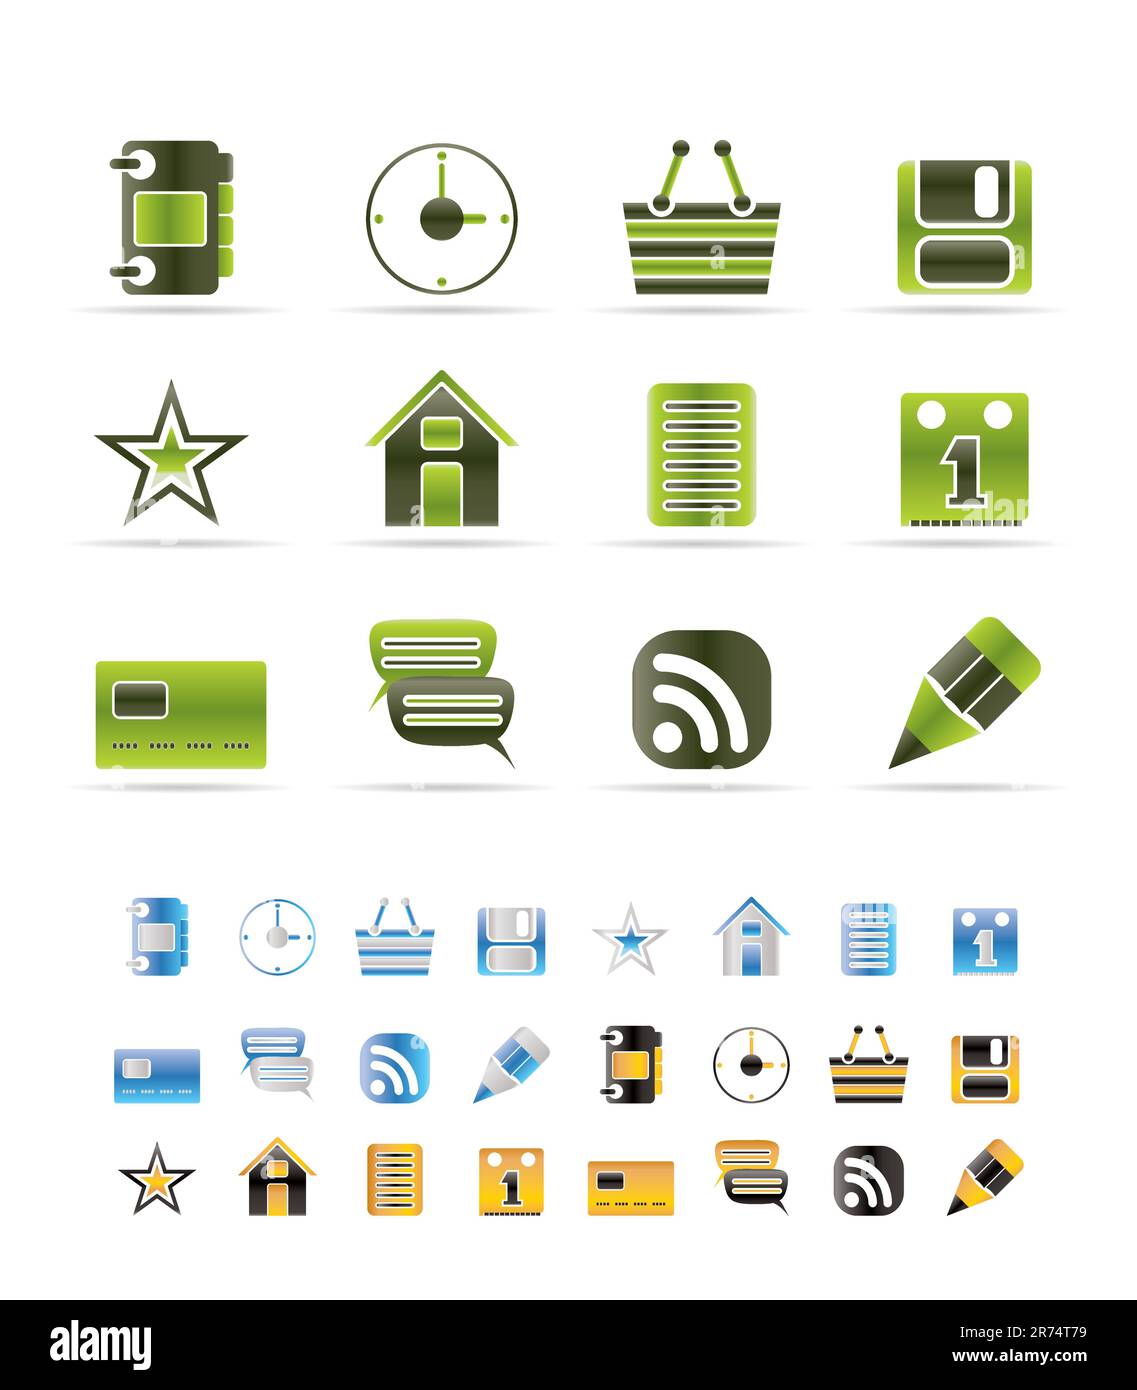 Icone Internet e siti Web - Set di icone vettoriali - 3 colori inclusi Illustrazione Vettoriale